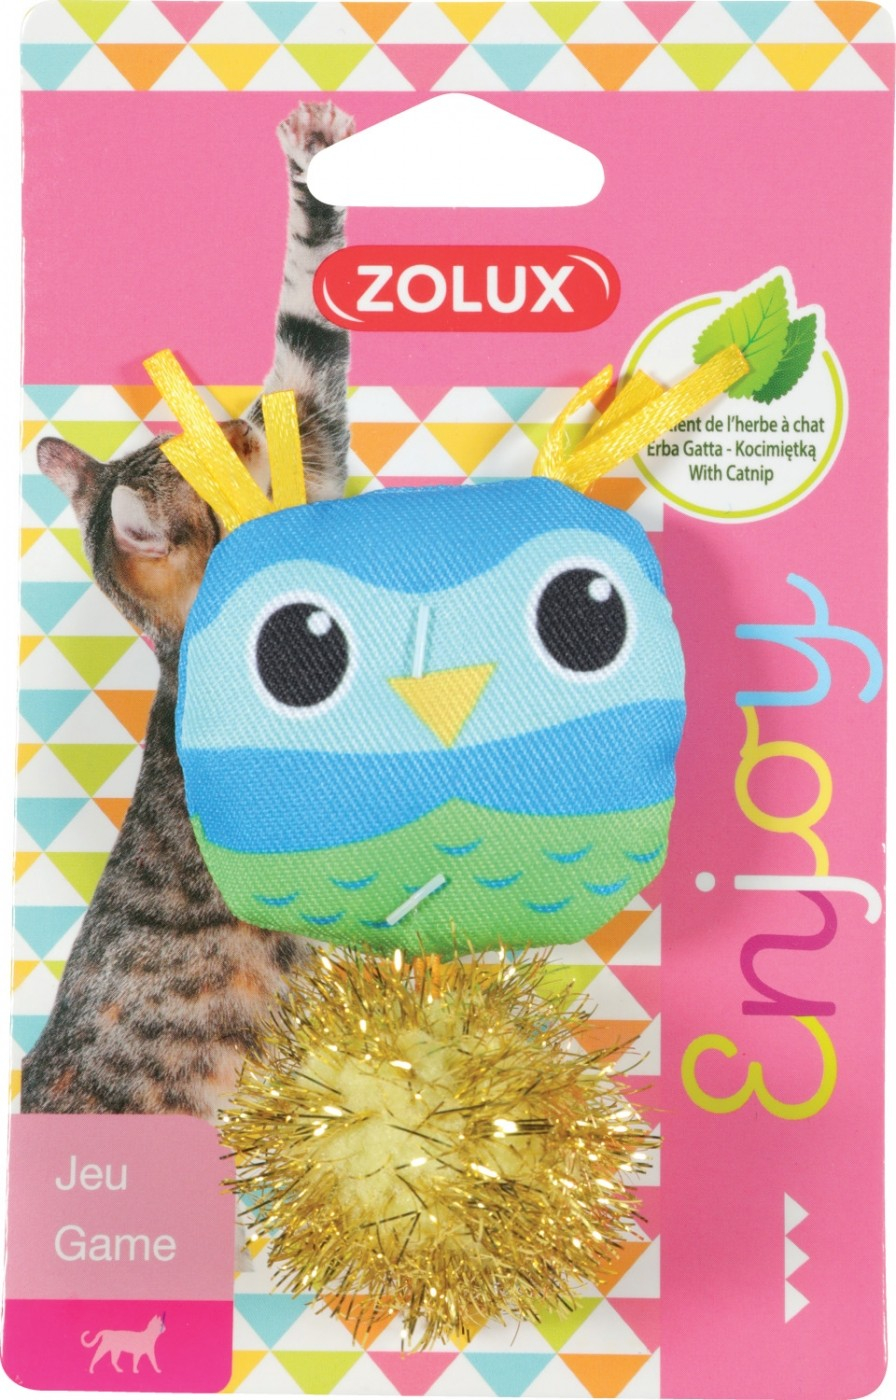 Zolux giocattolo per gatti Lovely con erba gatta - Gufo